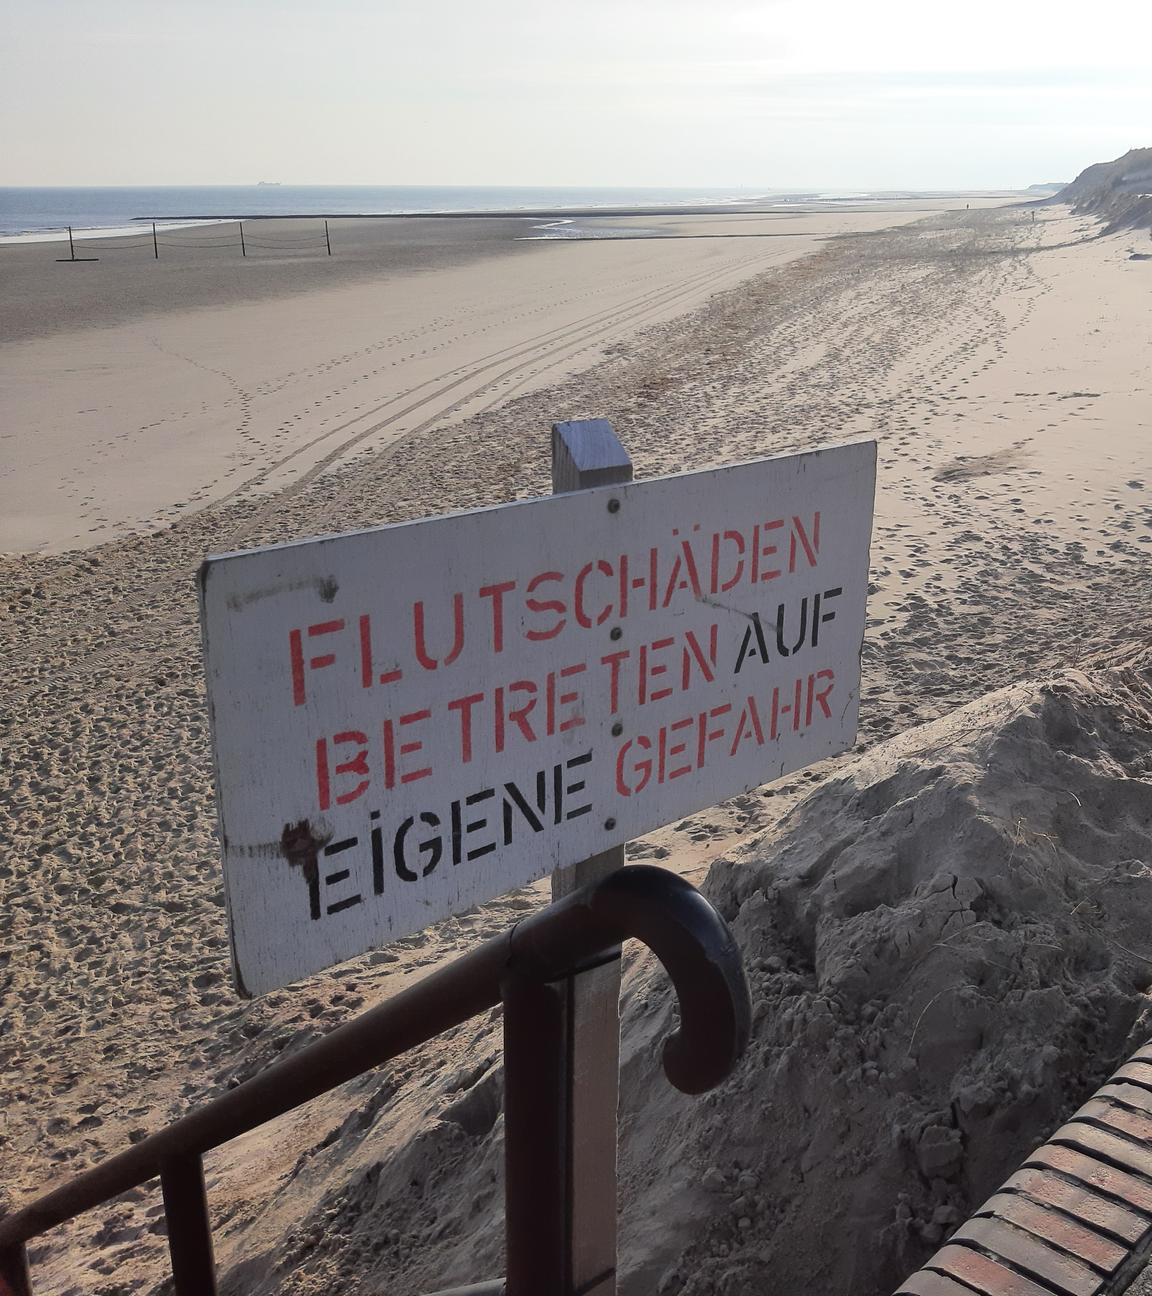 Ein Schild mit der Aufschrift "Flutschäden Betreten auf eigene Gefahr" weist am Strand der Insel Wangerooge auf fehlenden Sand am Strand hin.